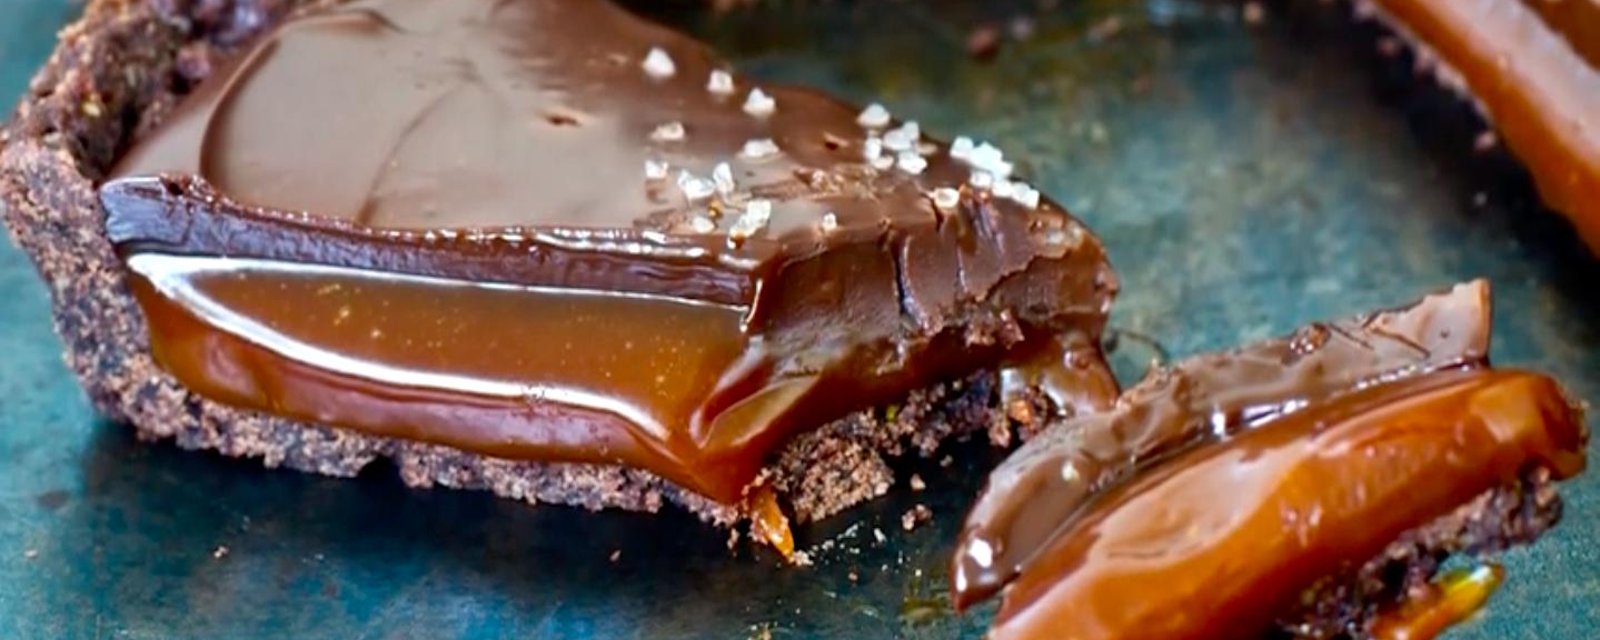 Cette tarte au chocolat et son intérieur fondant au caramel salé est une véritable perfection!